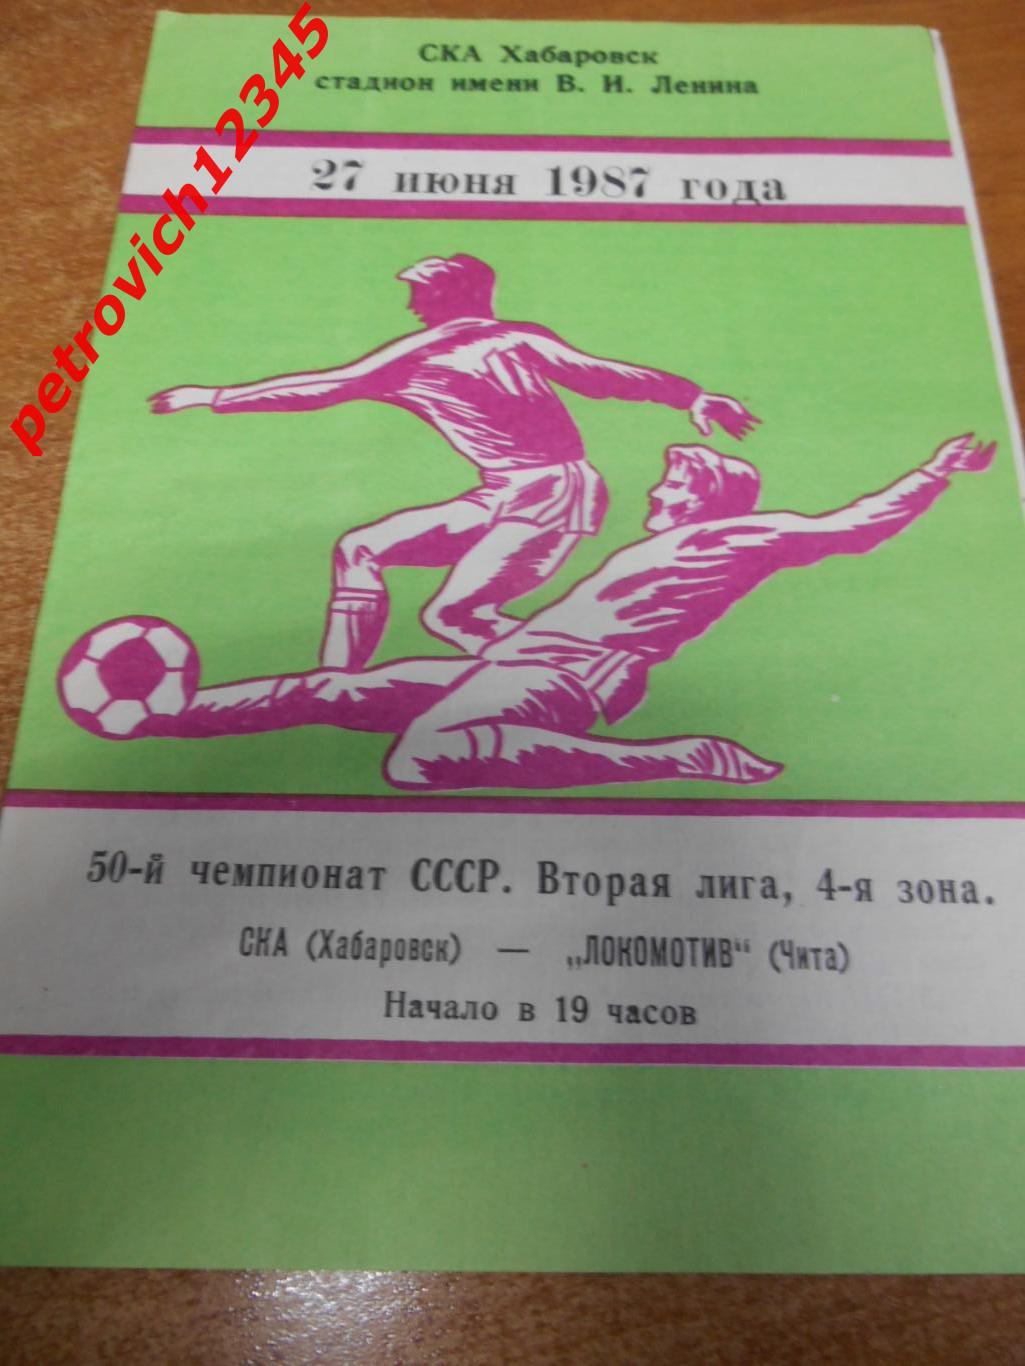 СКА Хабаровск - Локомотив Чита - 27 июня 1987г